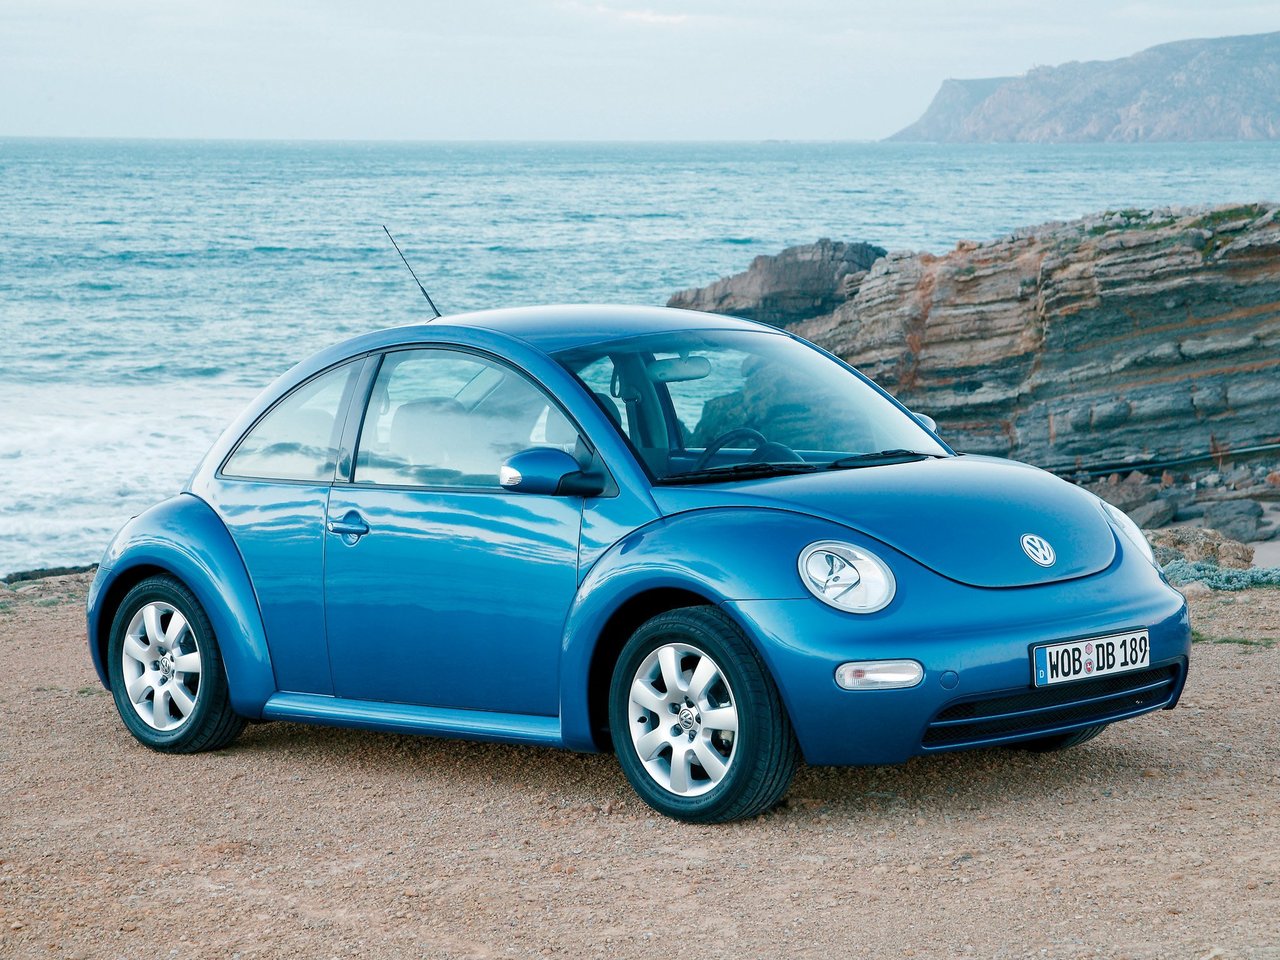 Расход газа девяти комплектаций хэтчбека три двери Volkswagen Beetle. Разница стоимости заправки газом и бензином. Автономный пробег до и после установки ГБО.